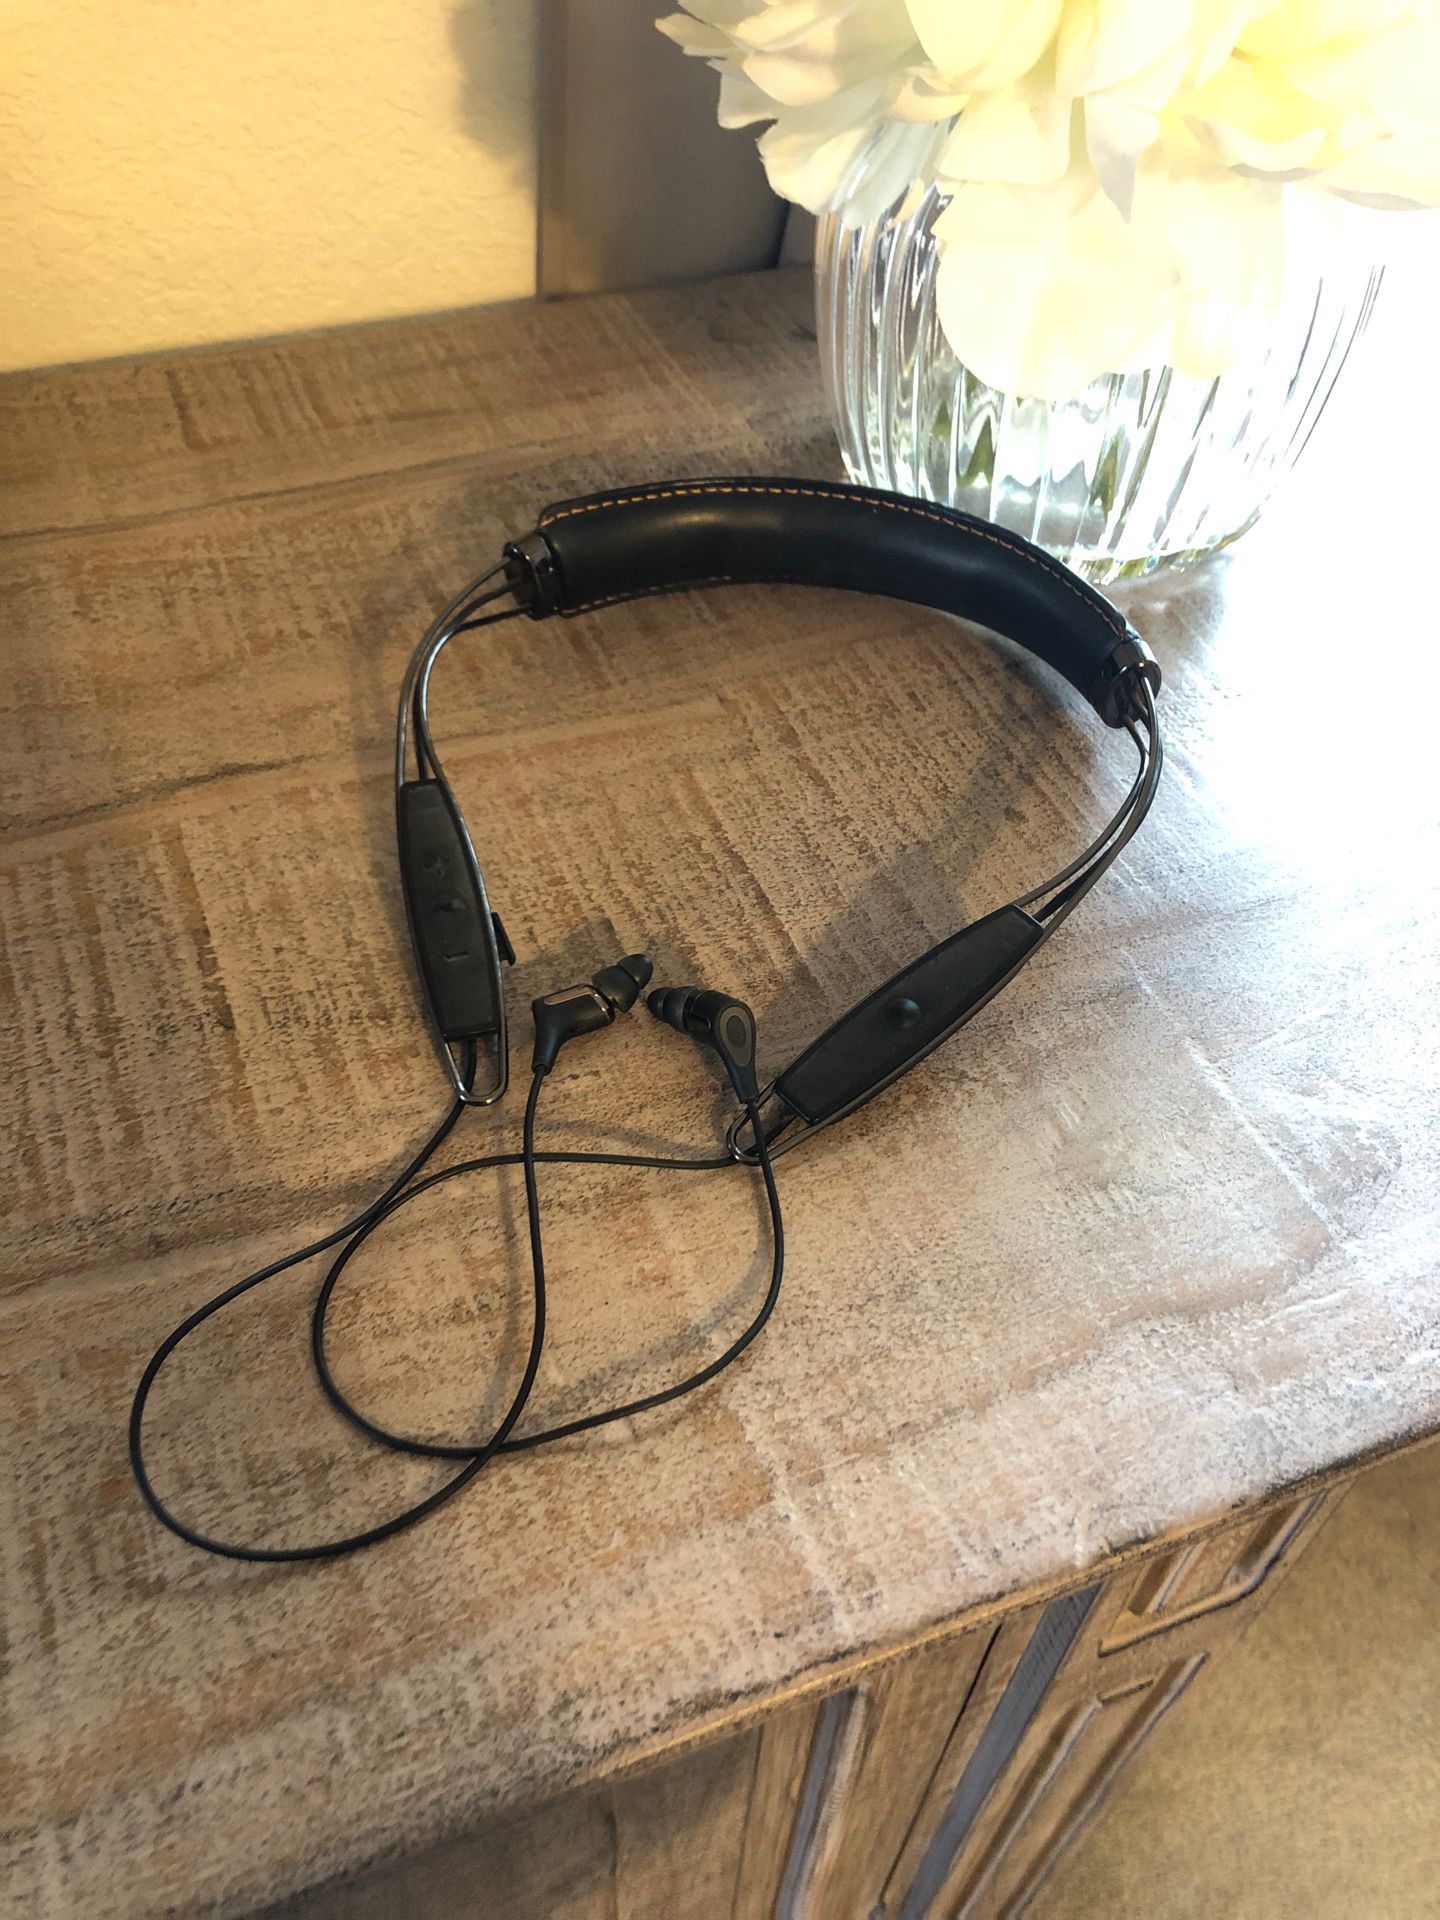 Klipsch headset